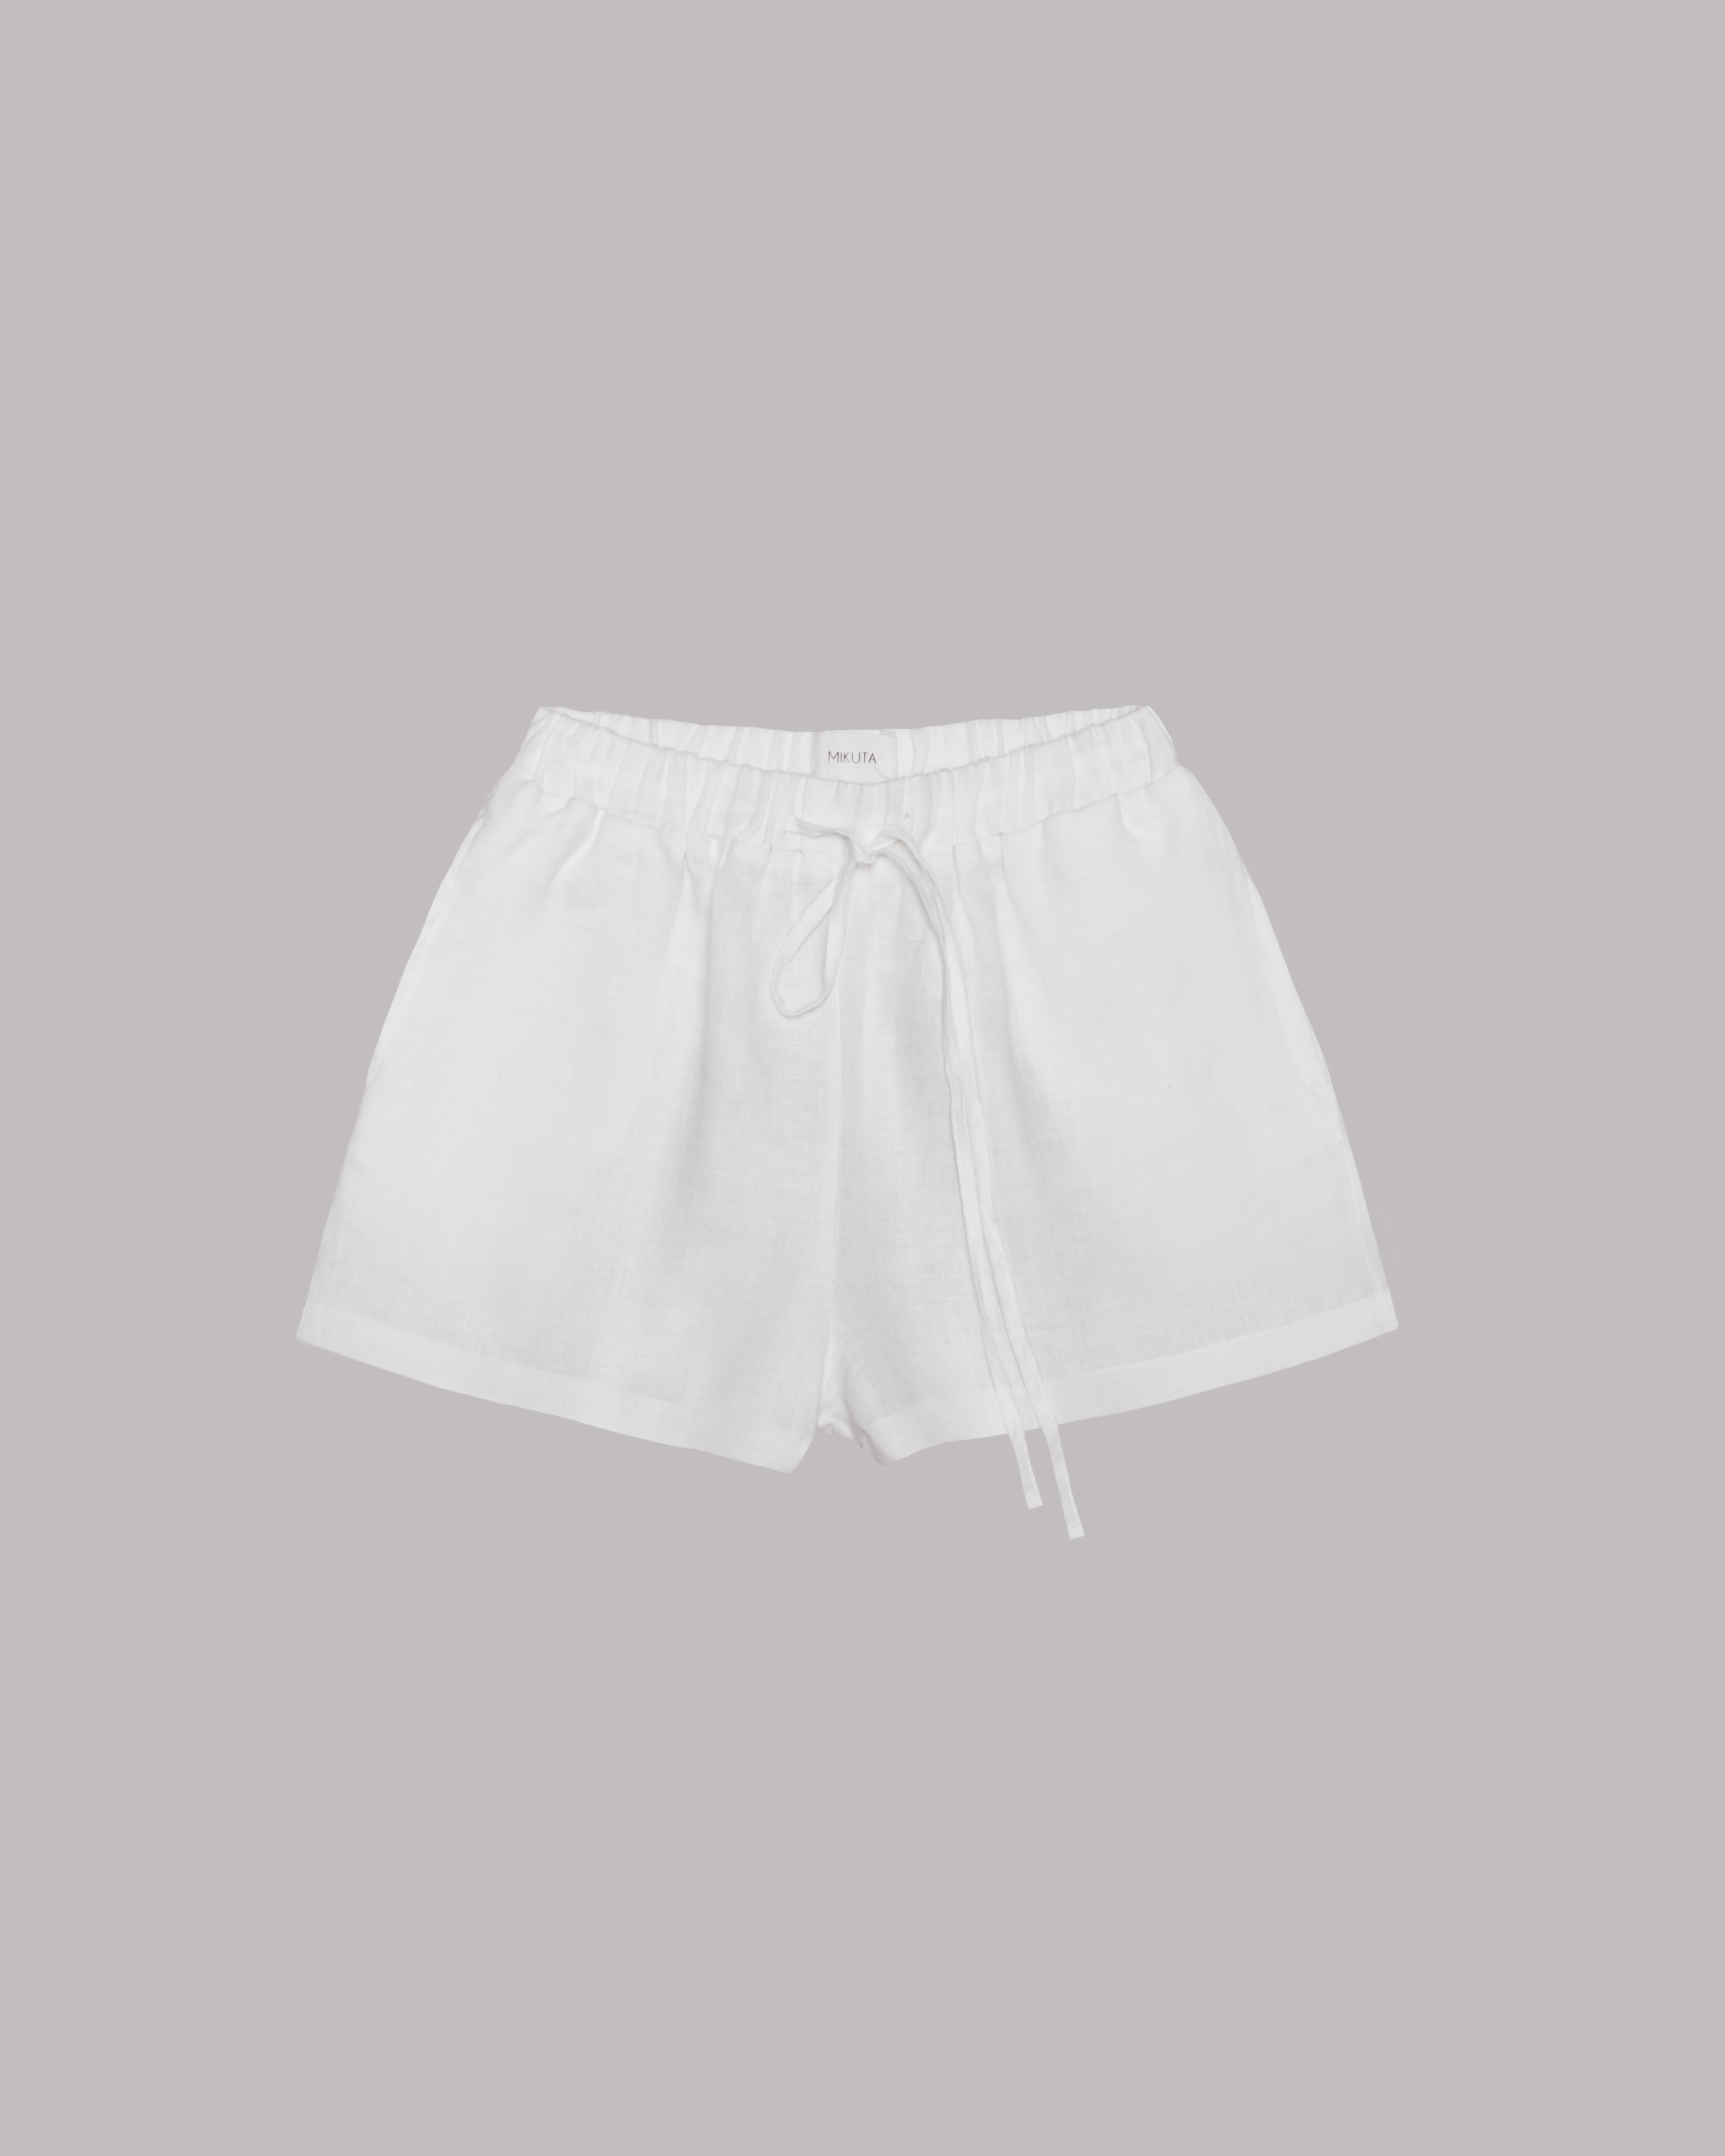 The White Linen Shorts